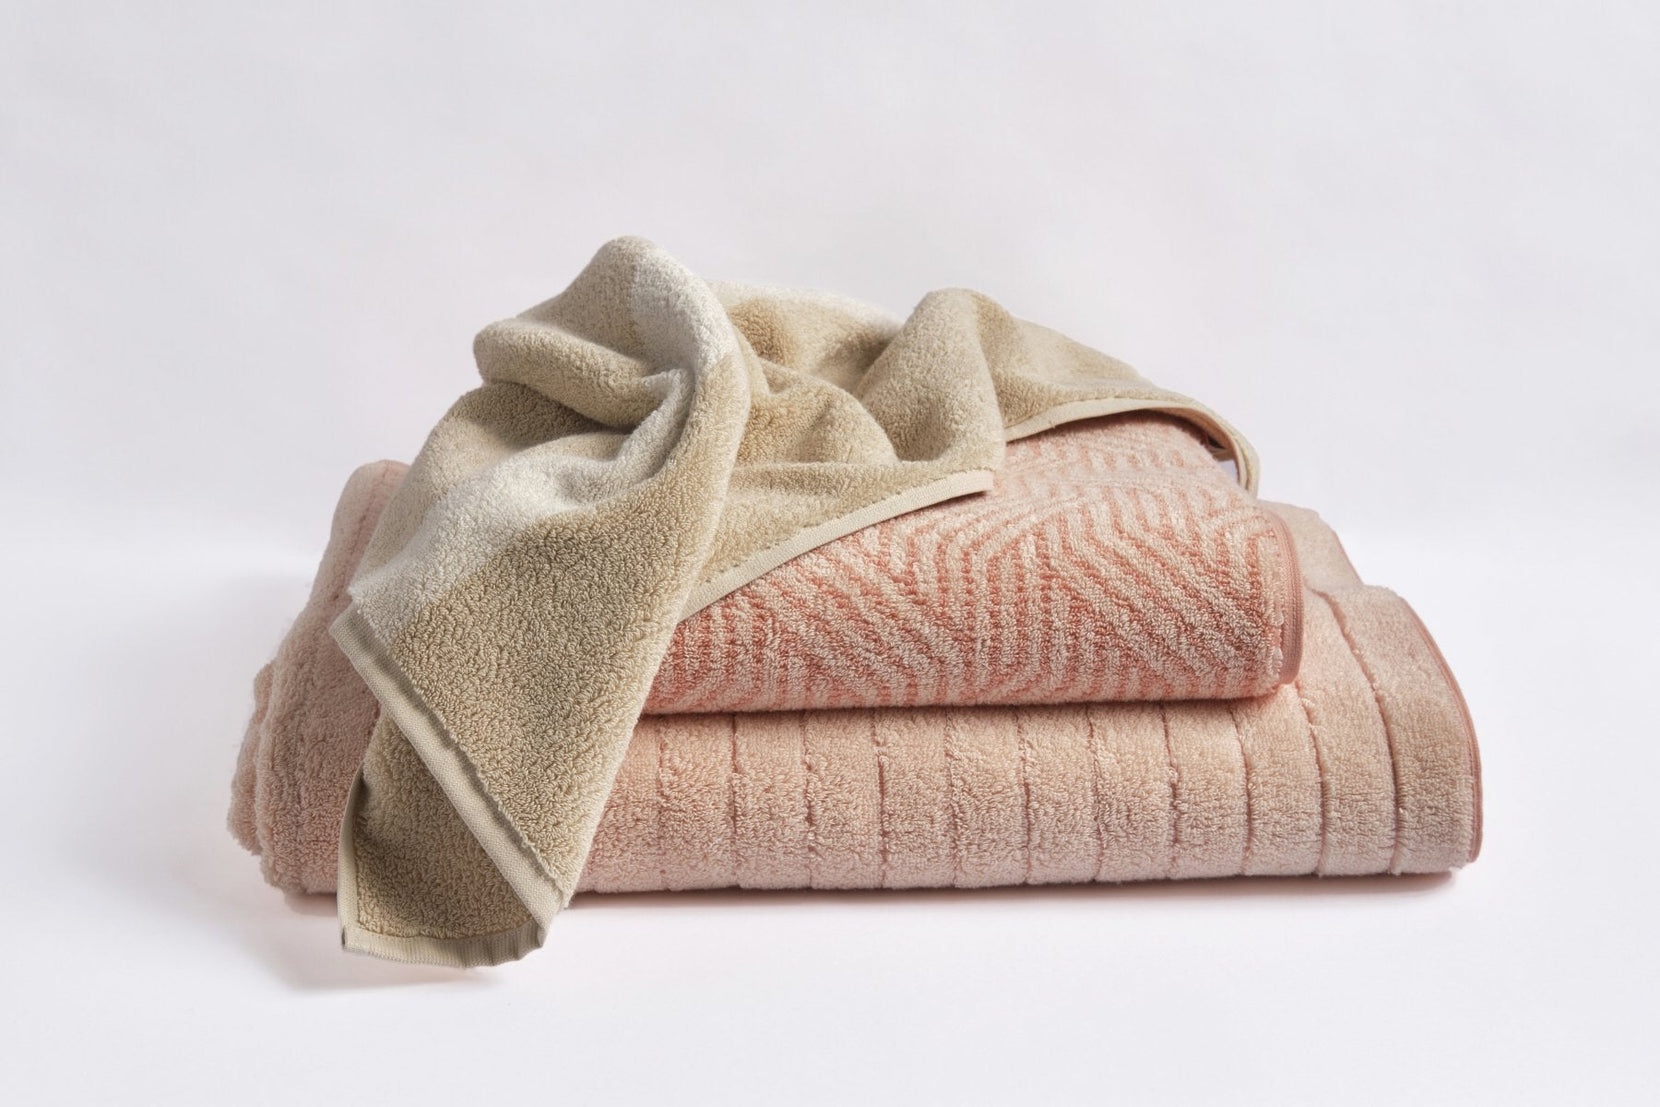 Cotton Paradise Bath Towels, 100% Turkish Cotton 27x54 inch 4